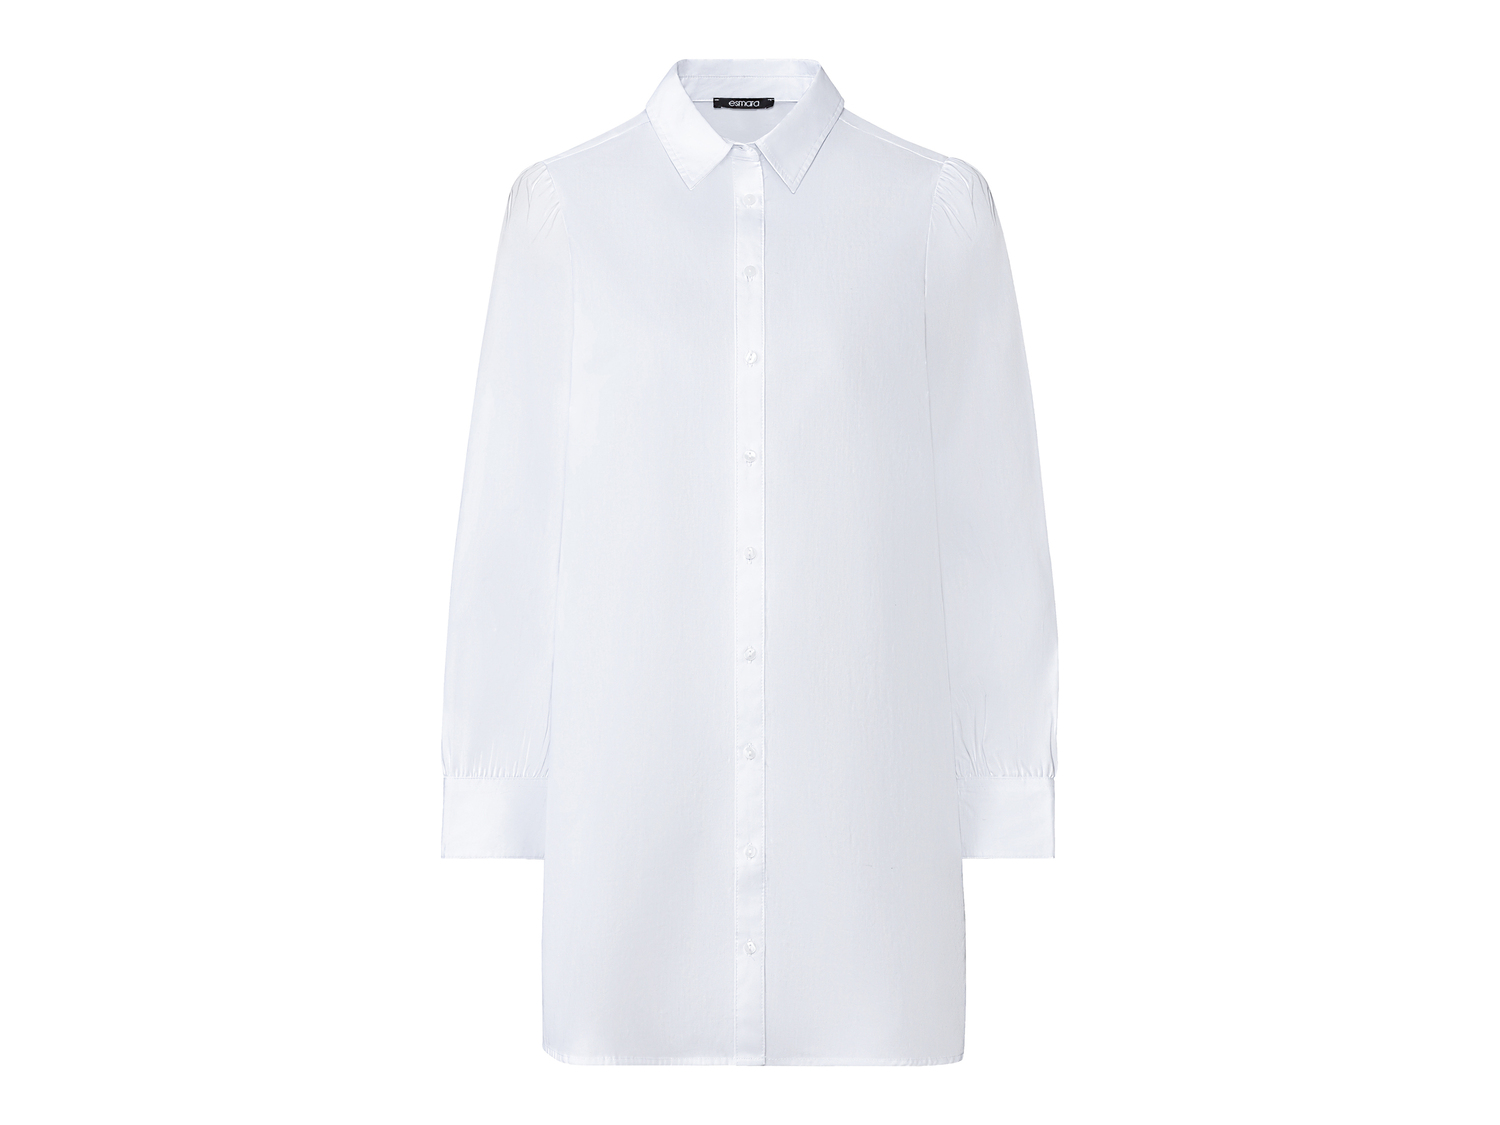 Camicia lunga da donna Esmara, prezzo 9.99 &#8364; 
Misure: 38-48 
- Puro cotone
Taglie ...